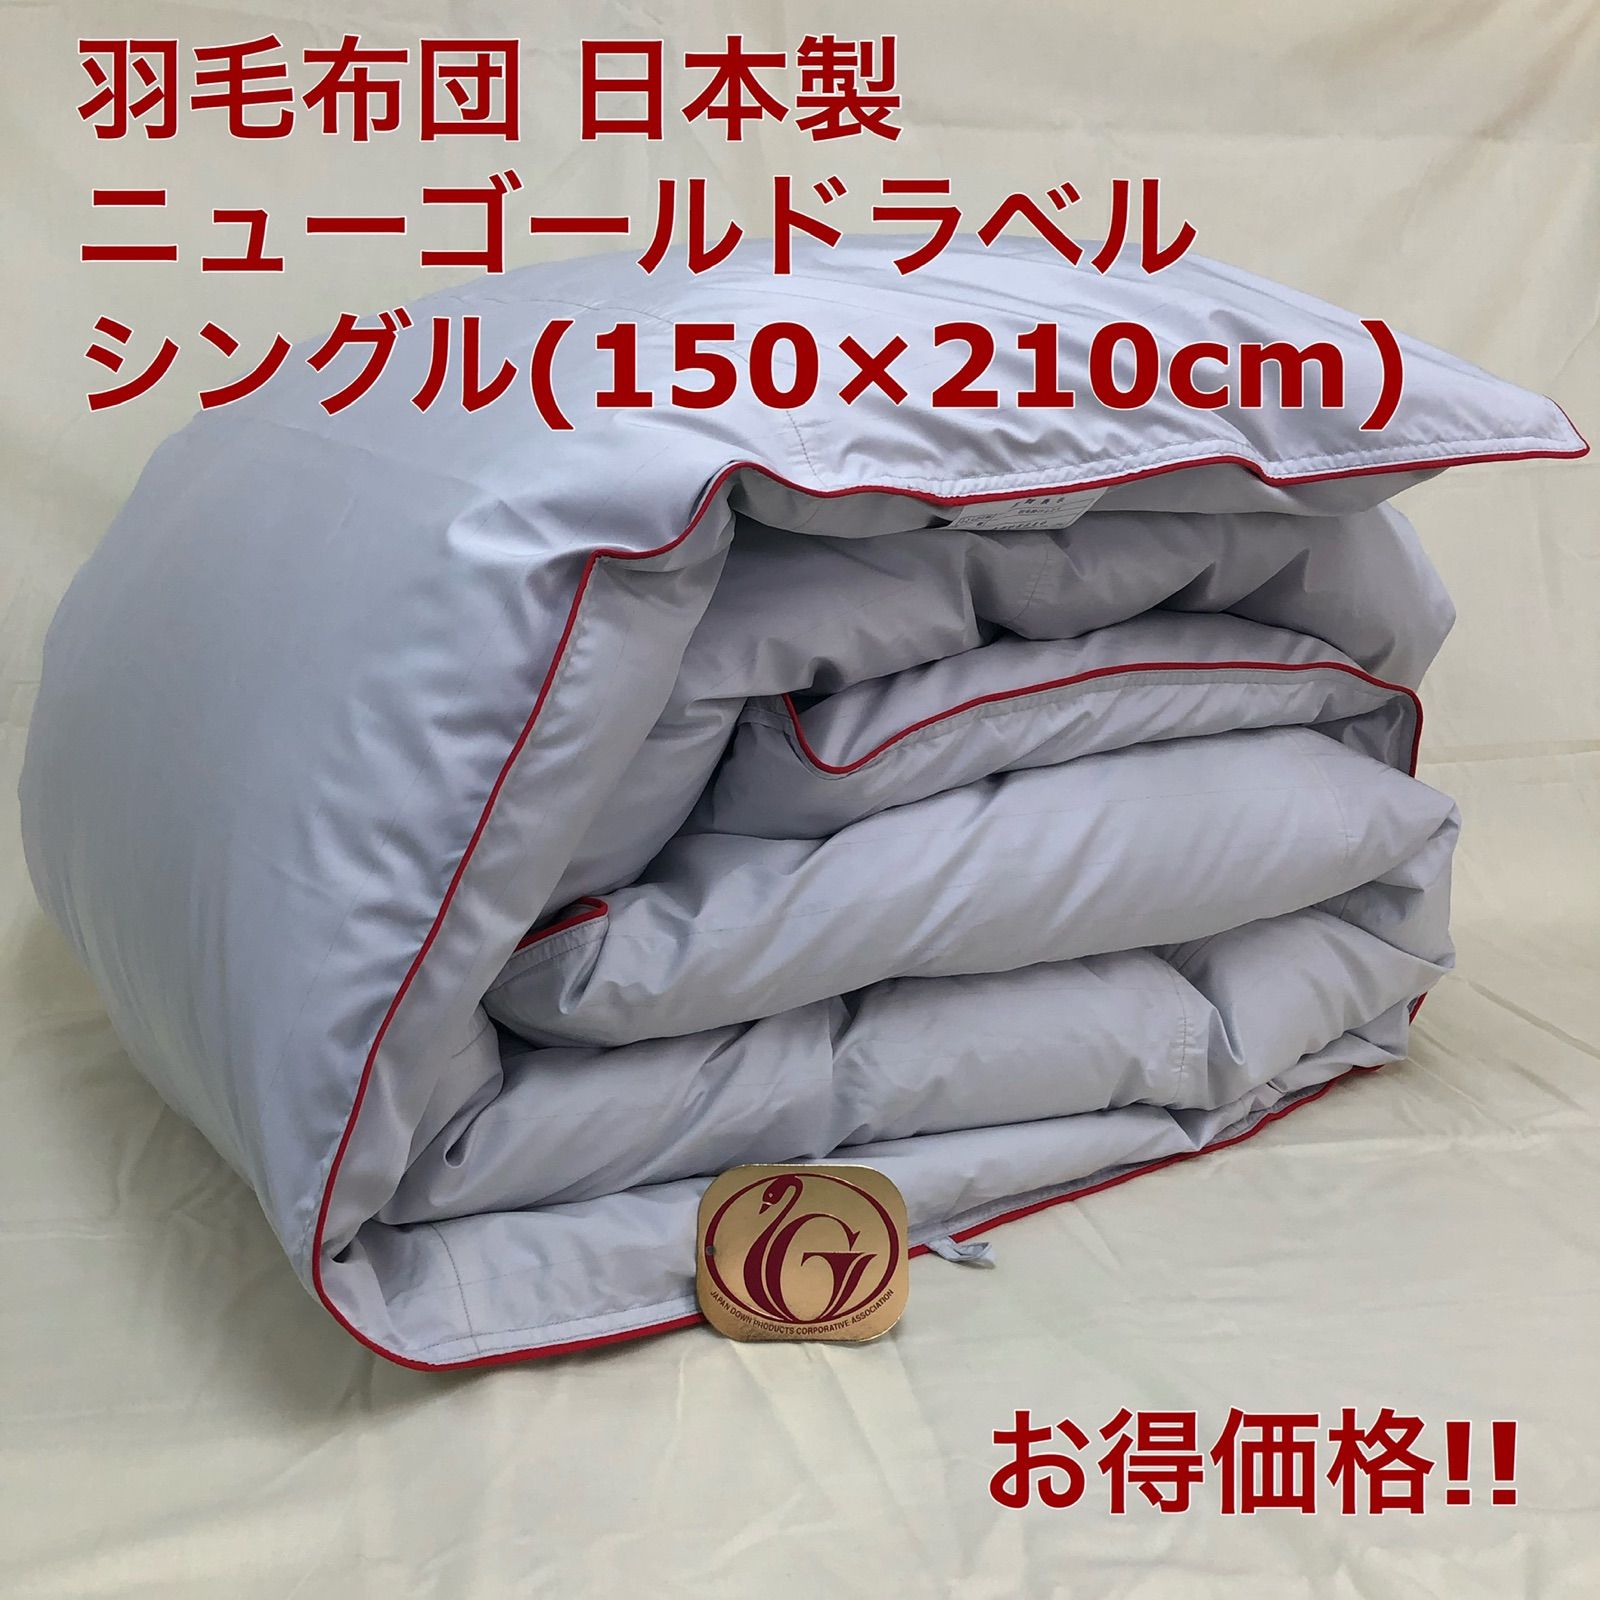 羽毛布団 ダブル ニューゴールド きなり 日本製 190×210cm 特別価格